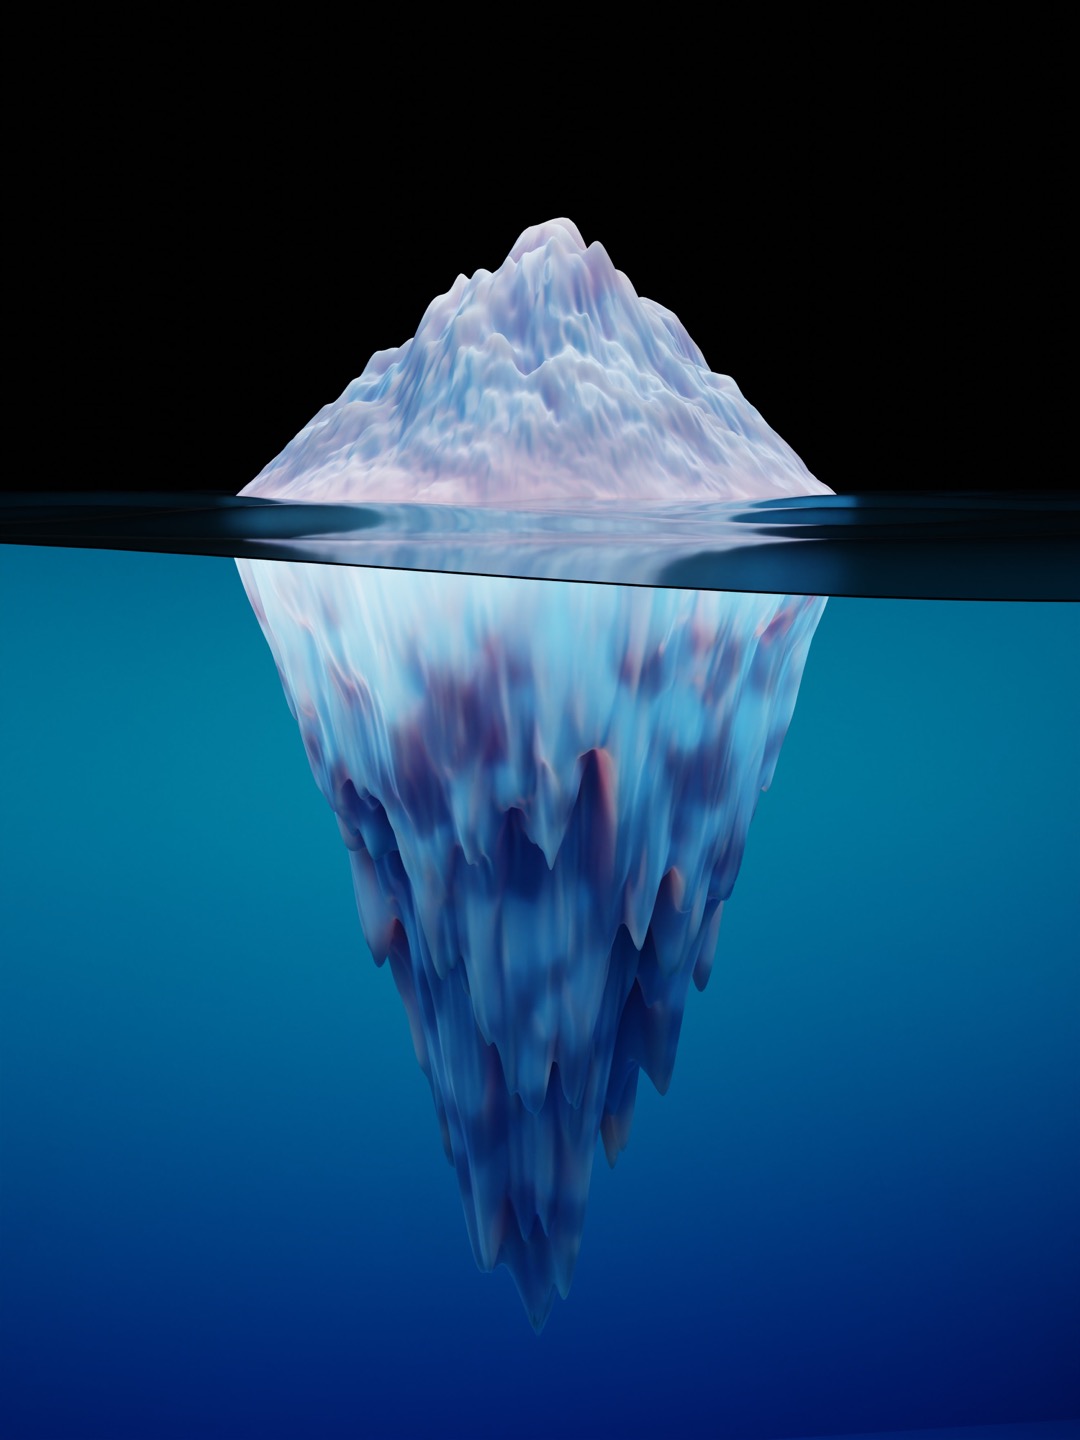 Iceberg @unsplash/simon.lee